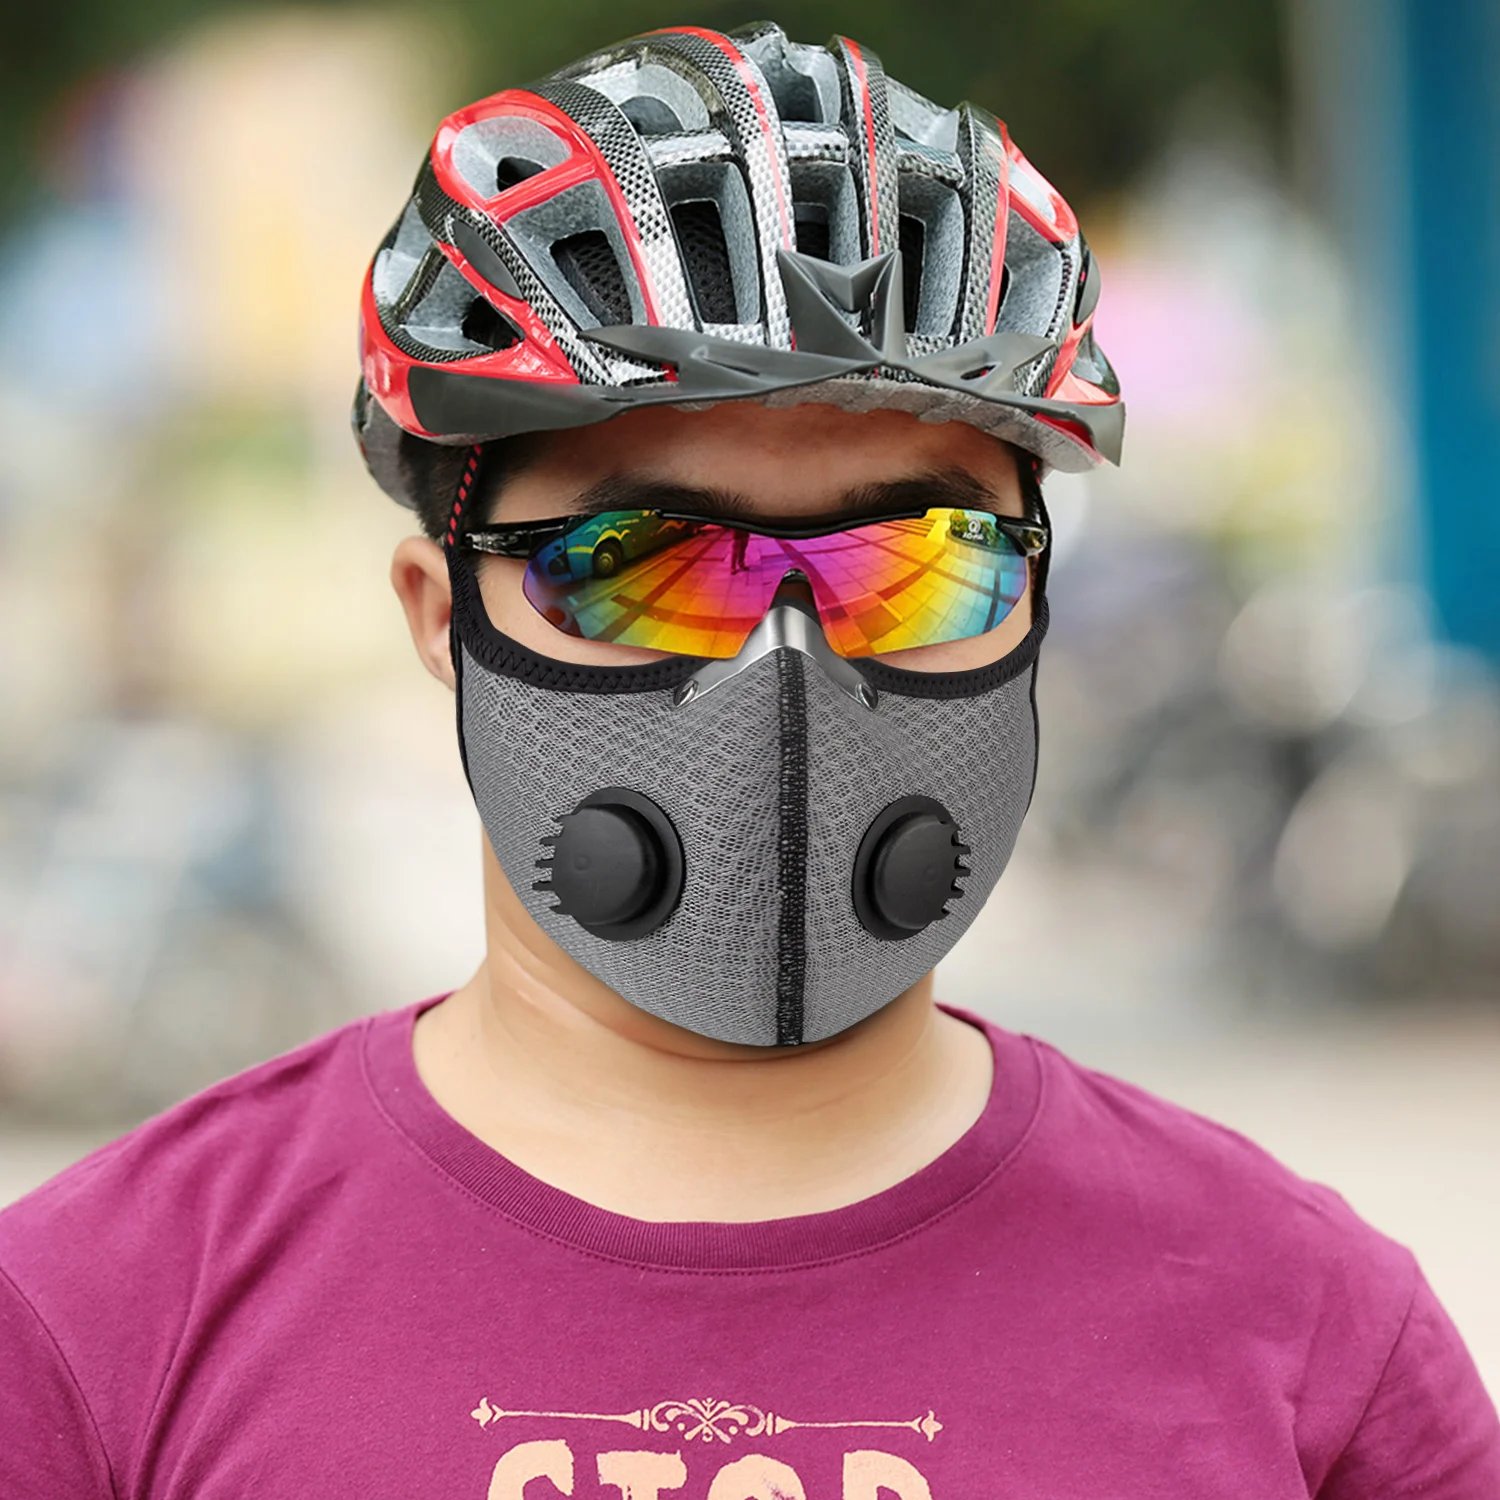 Пылезащитная маска против загрязнения воздуха, пыльца, аллергия, деревообрабатывающая маска для рта, защита от дыхания, многоразовая маска-респиратор на половину лица